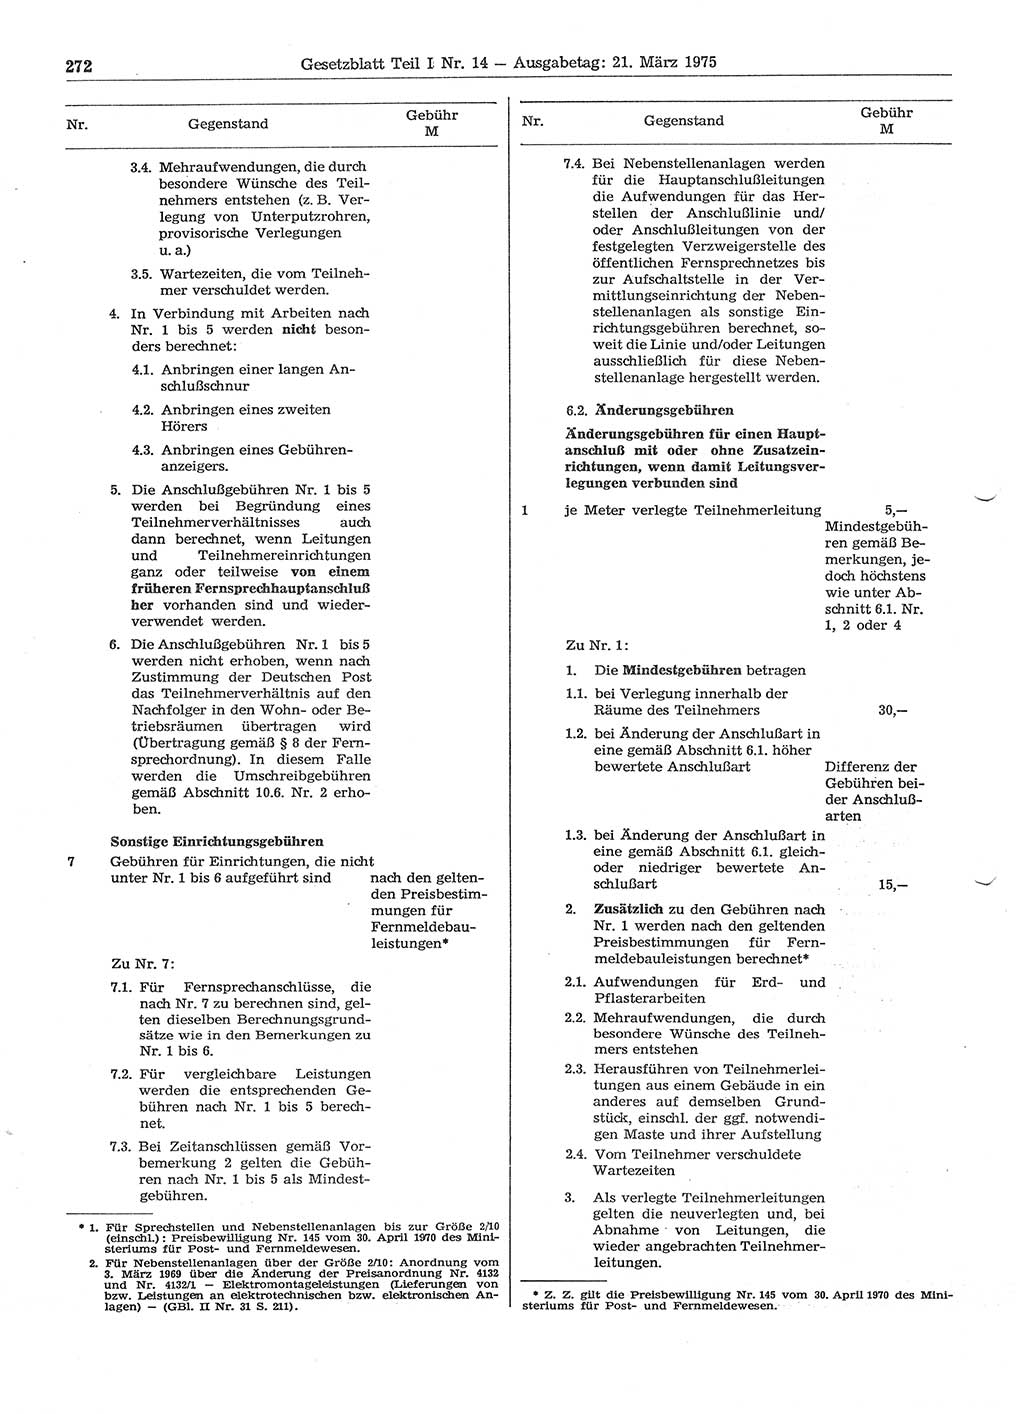 Gesetzblatt (GBl.) der Deutschen Demokratischen Republik (DDR) Teil Ⅰ 1975, Seite 272 (GBl. DDR Ⅰ 1975, S. 272)